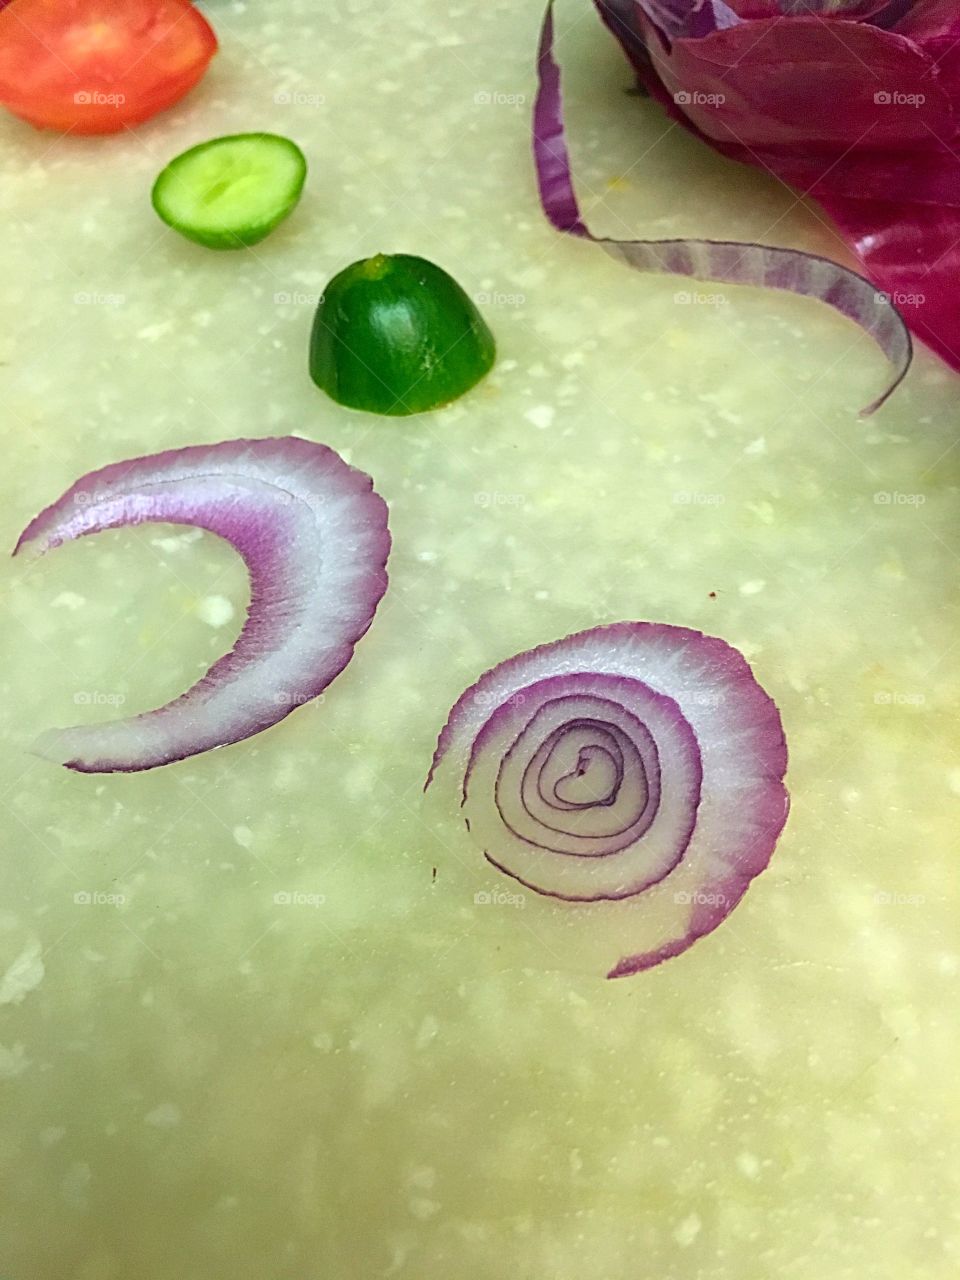 Heart in an onion